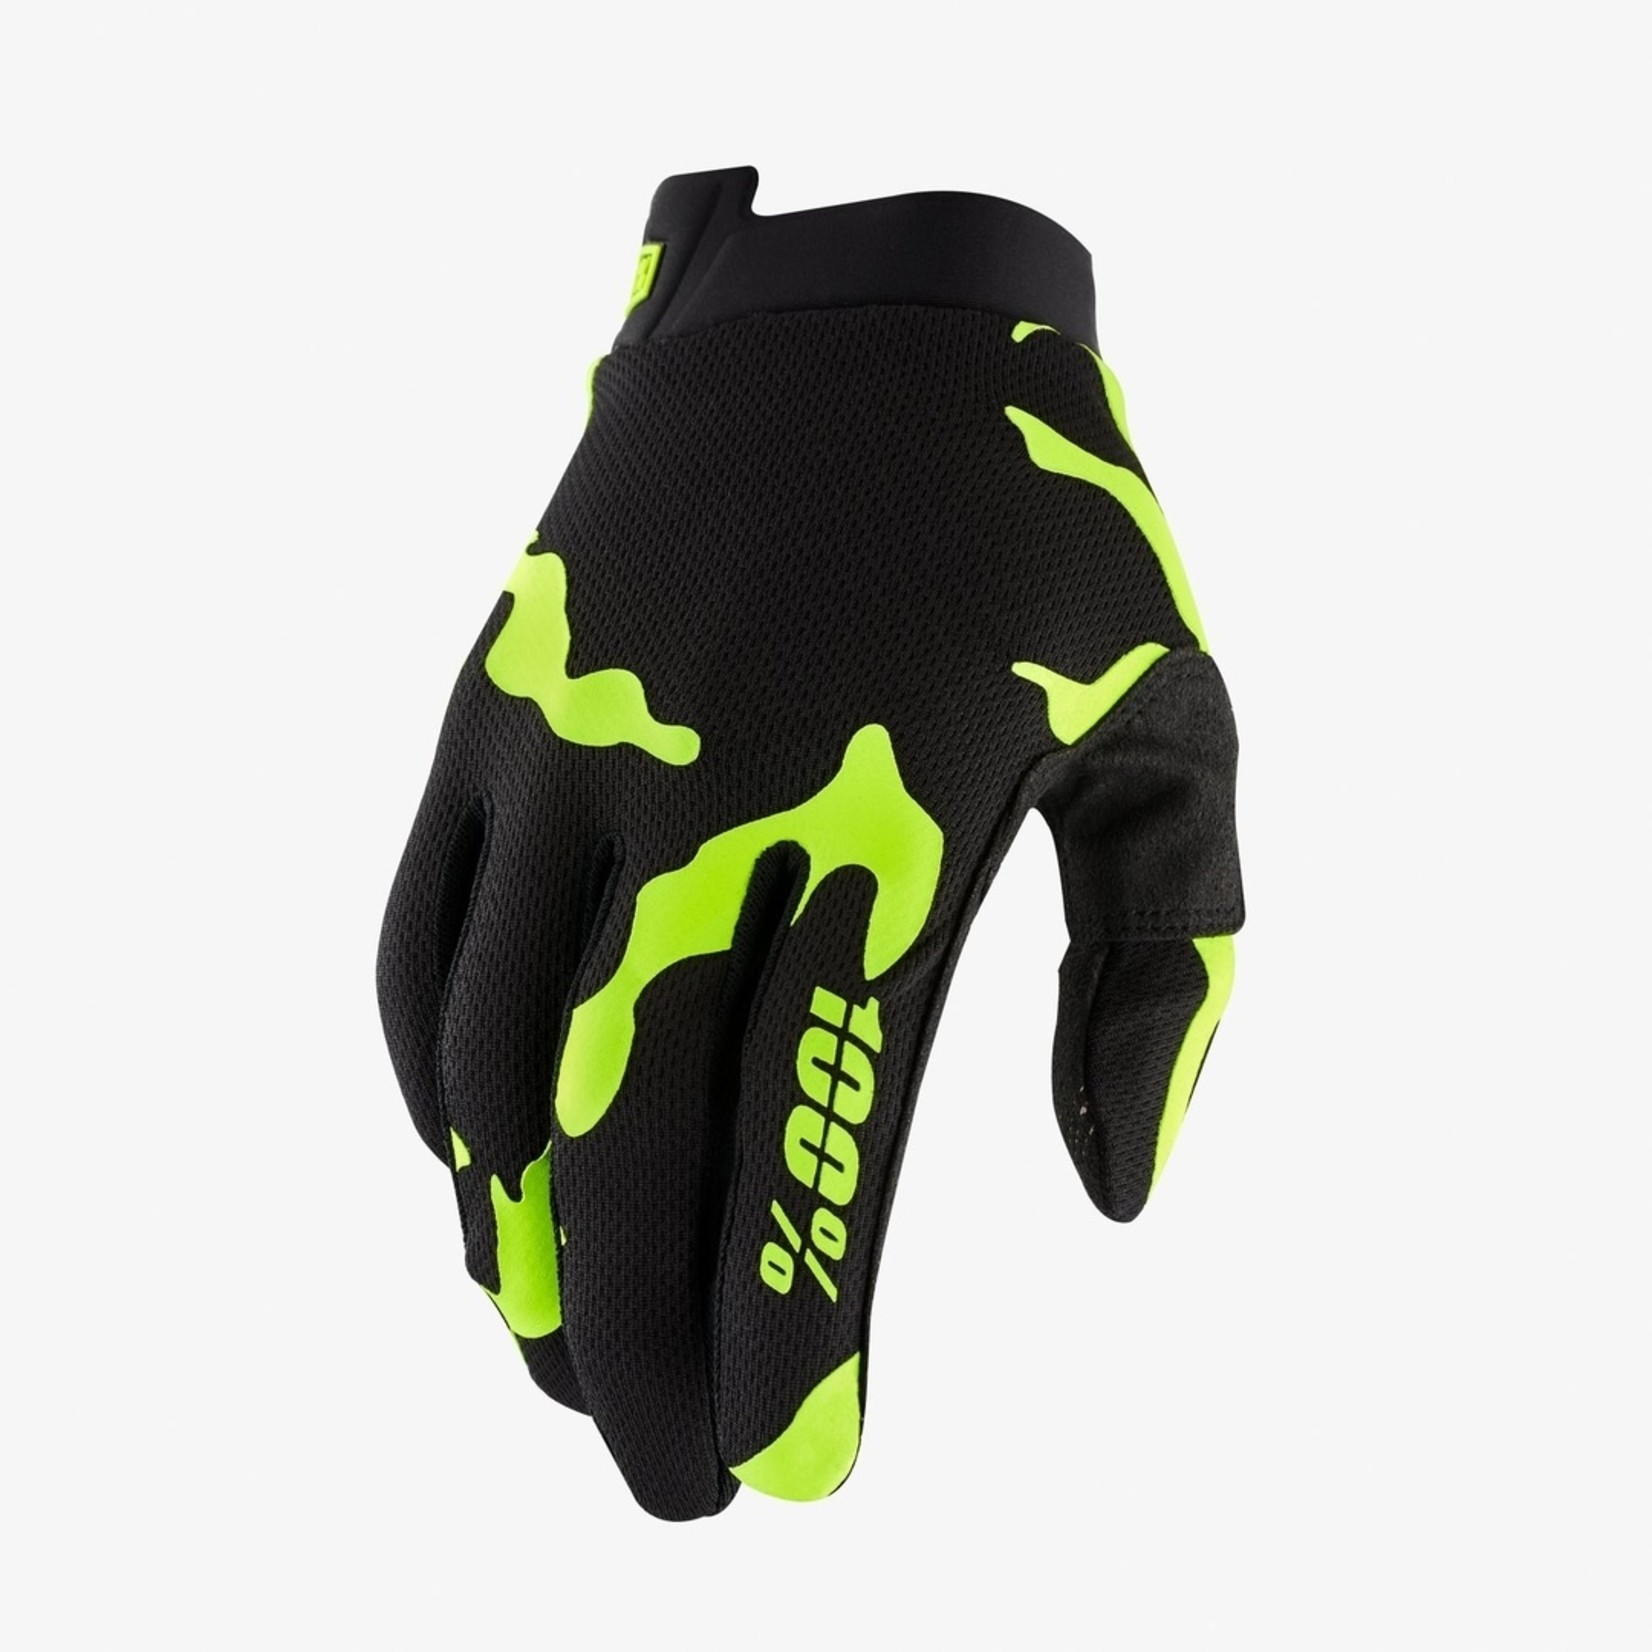 FE sports 100% Itrack Cycling Gloves - Salamander